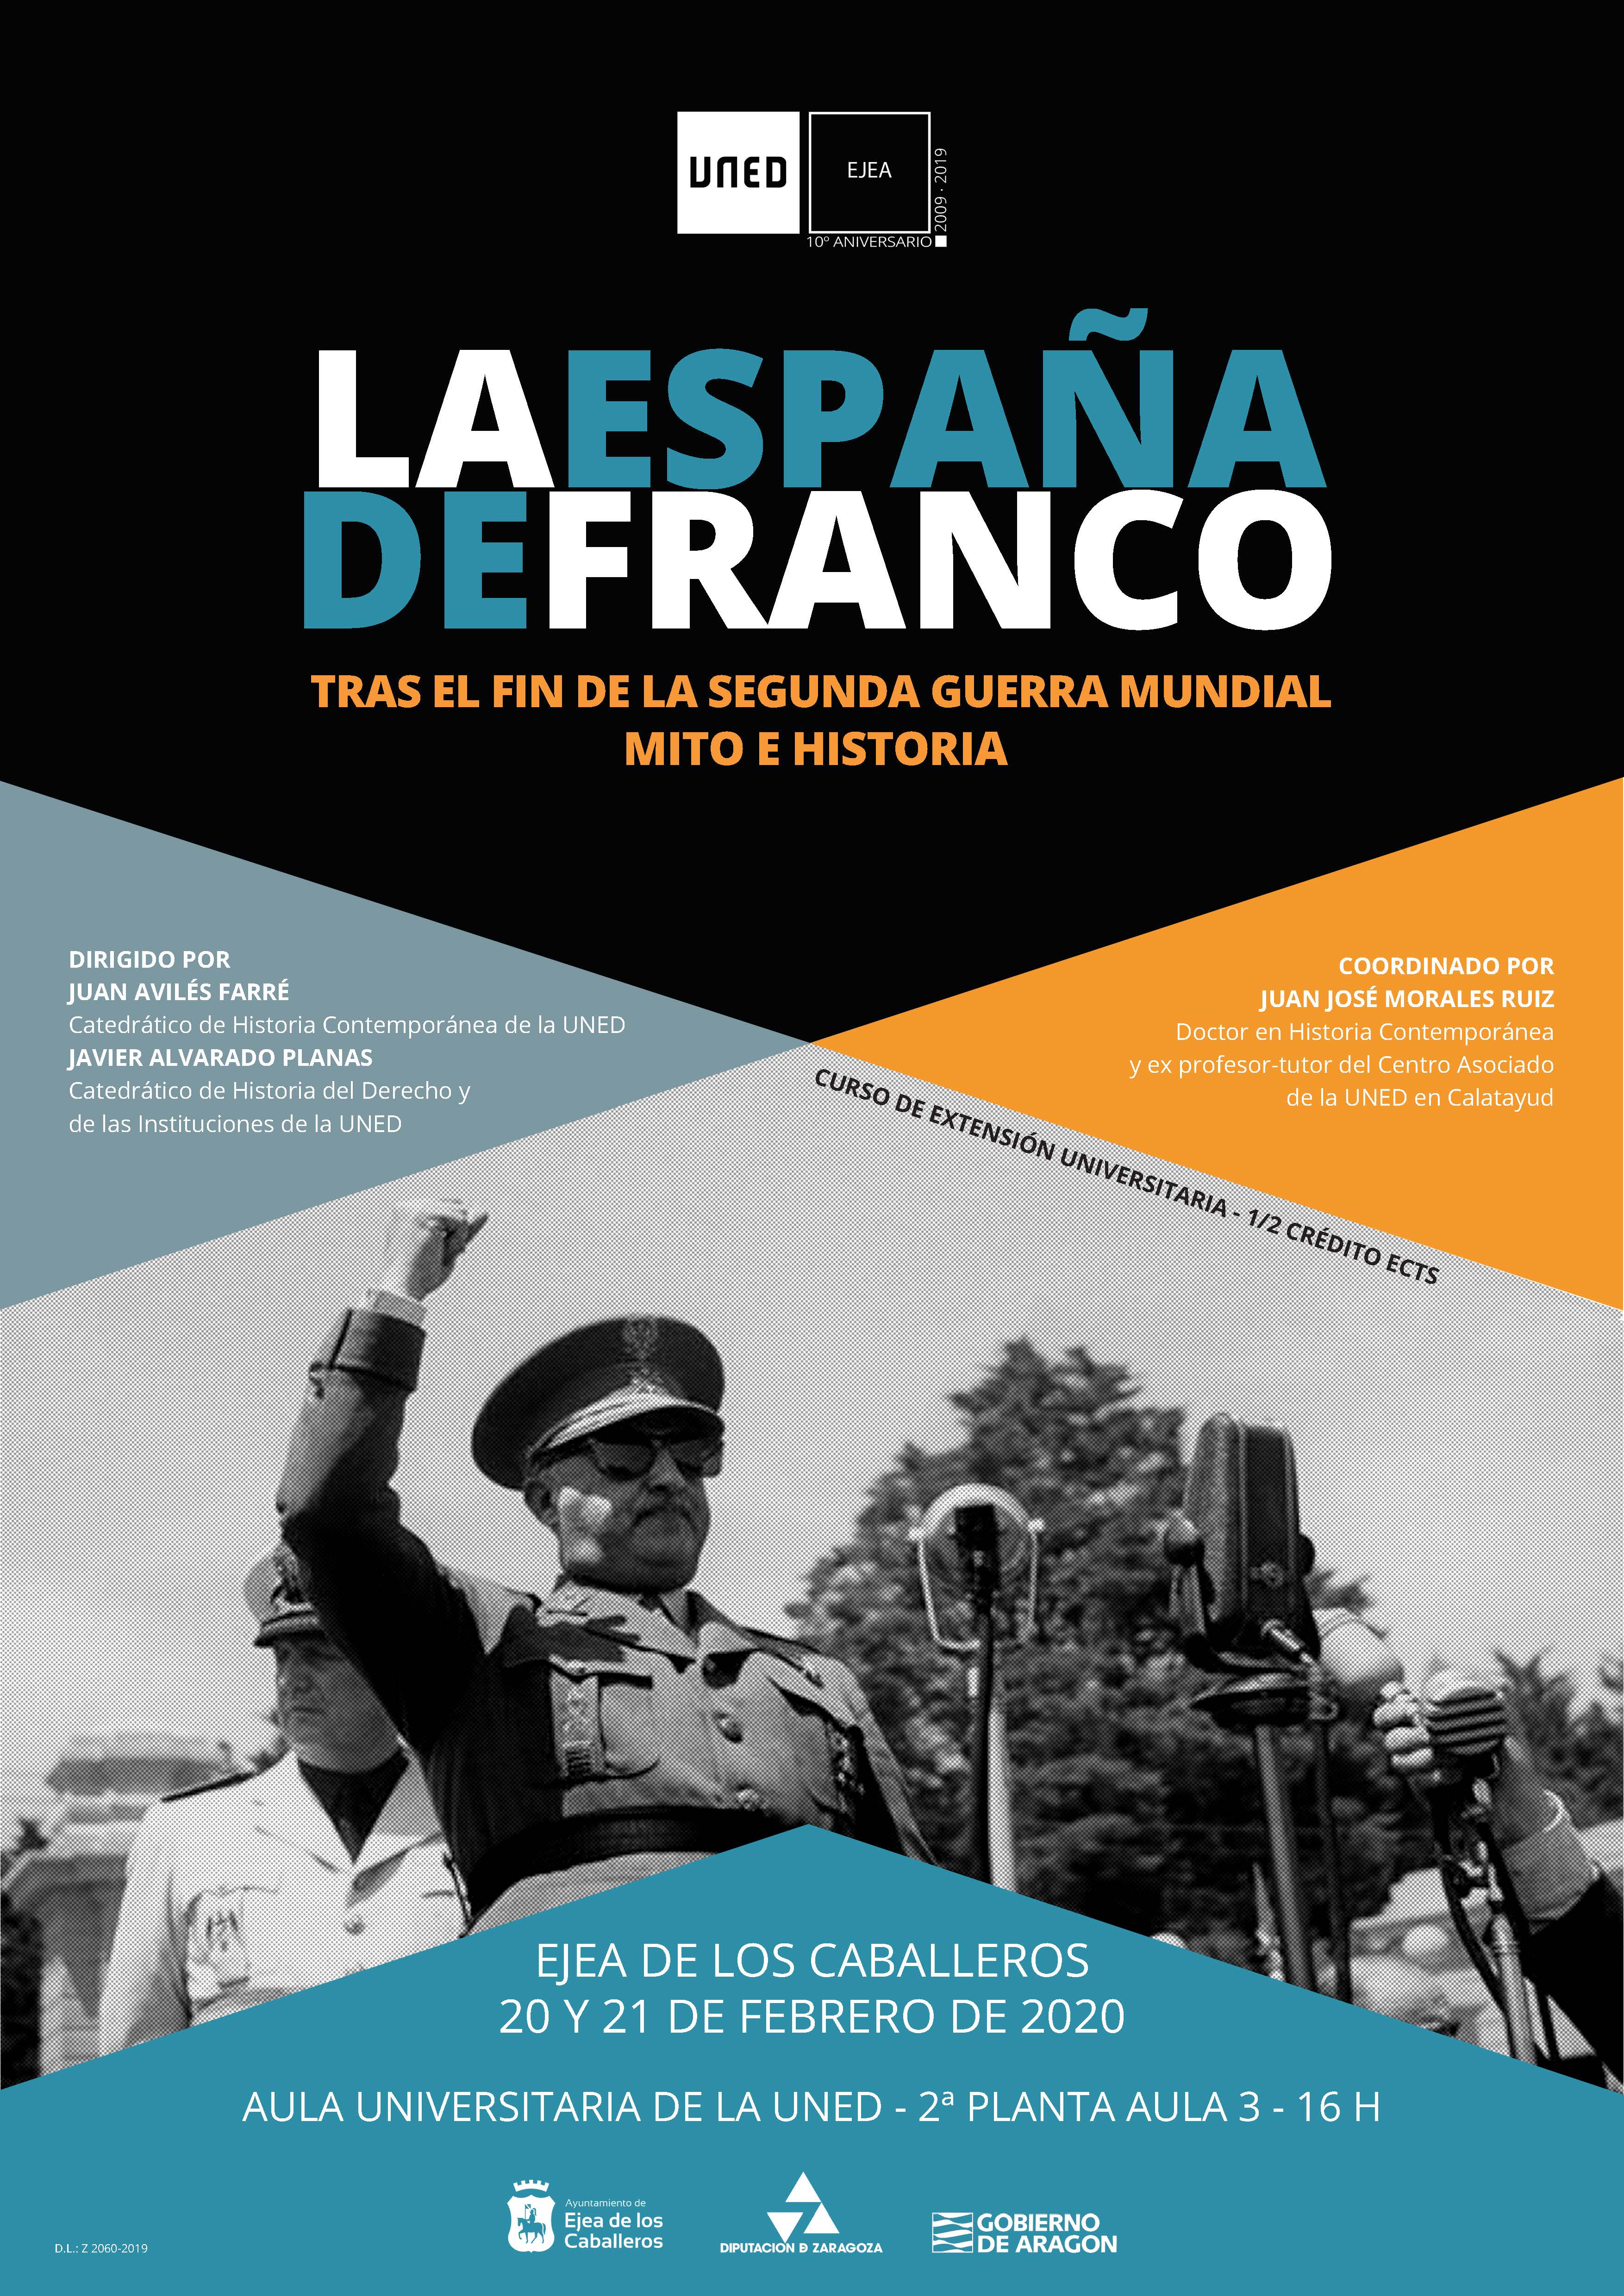 En este momento estás viendo Curso de Extensión Universitaria de la UNED “La España de Franco tras el fin de la Segunda Guerra Mundial: Mito e historia”